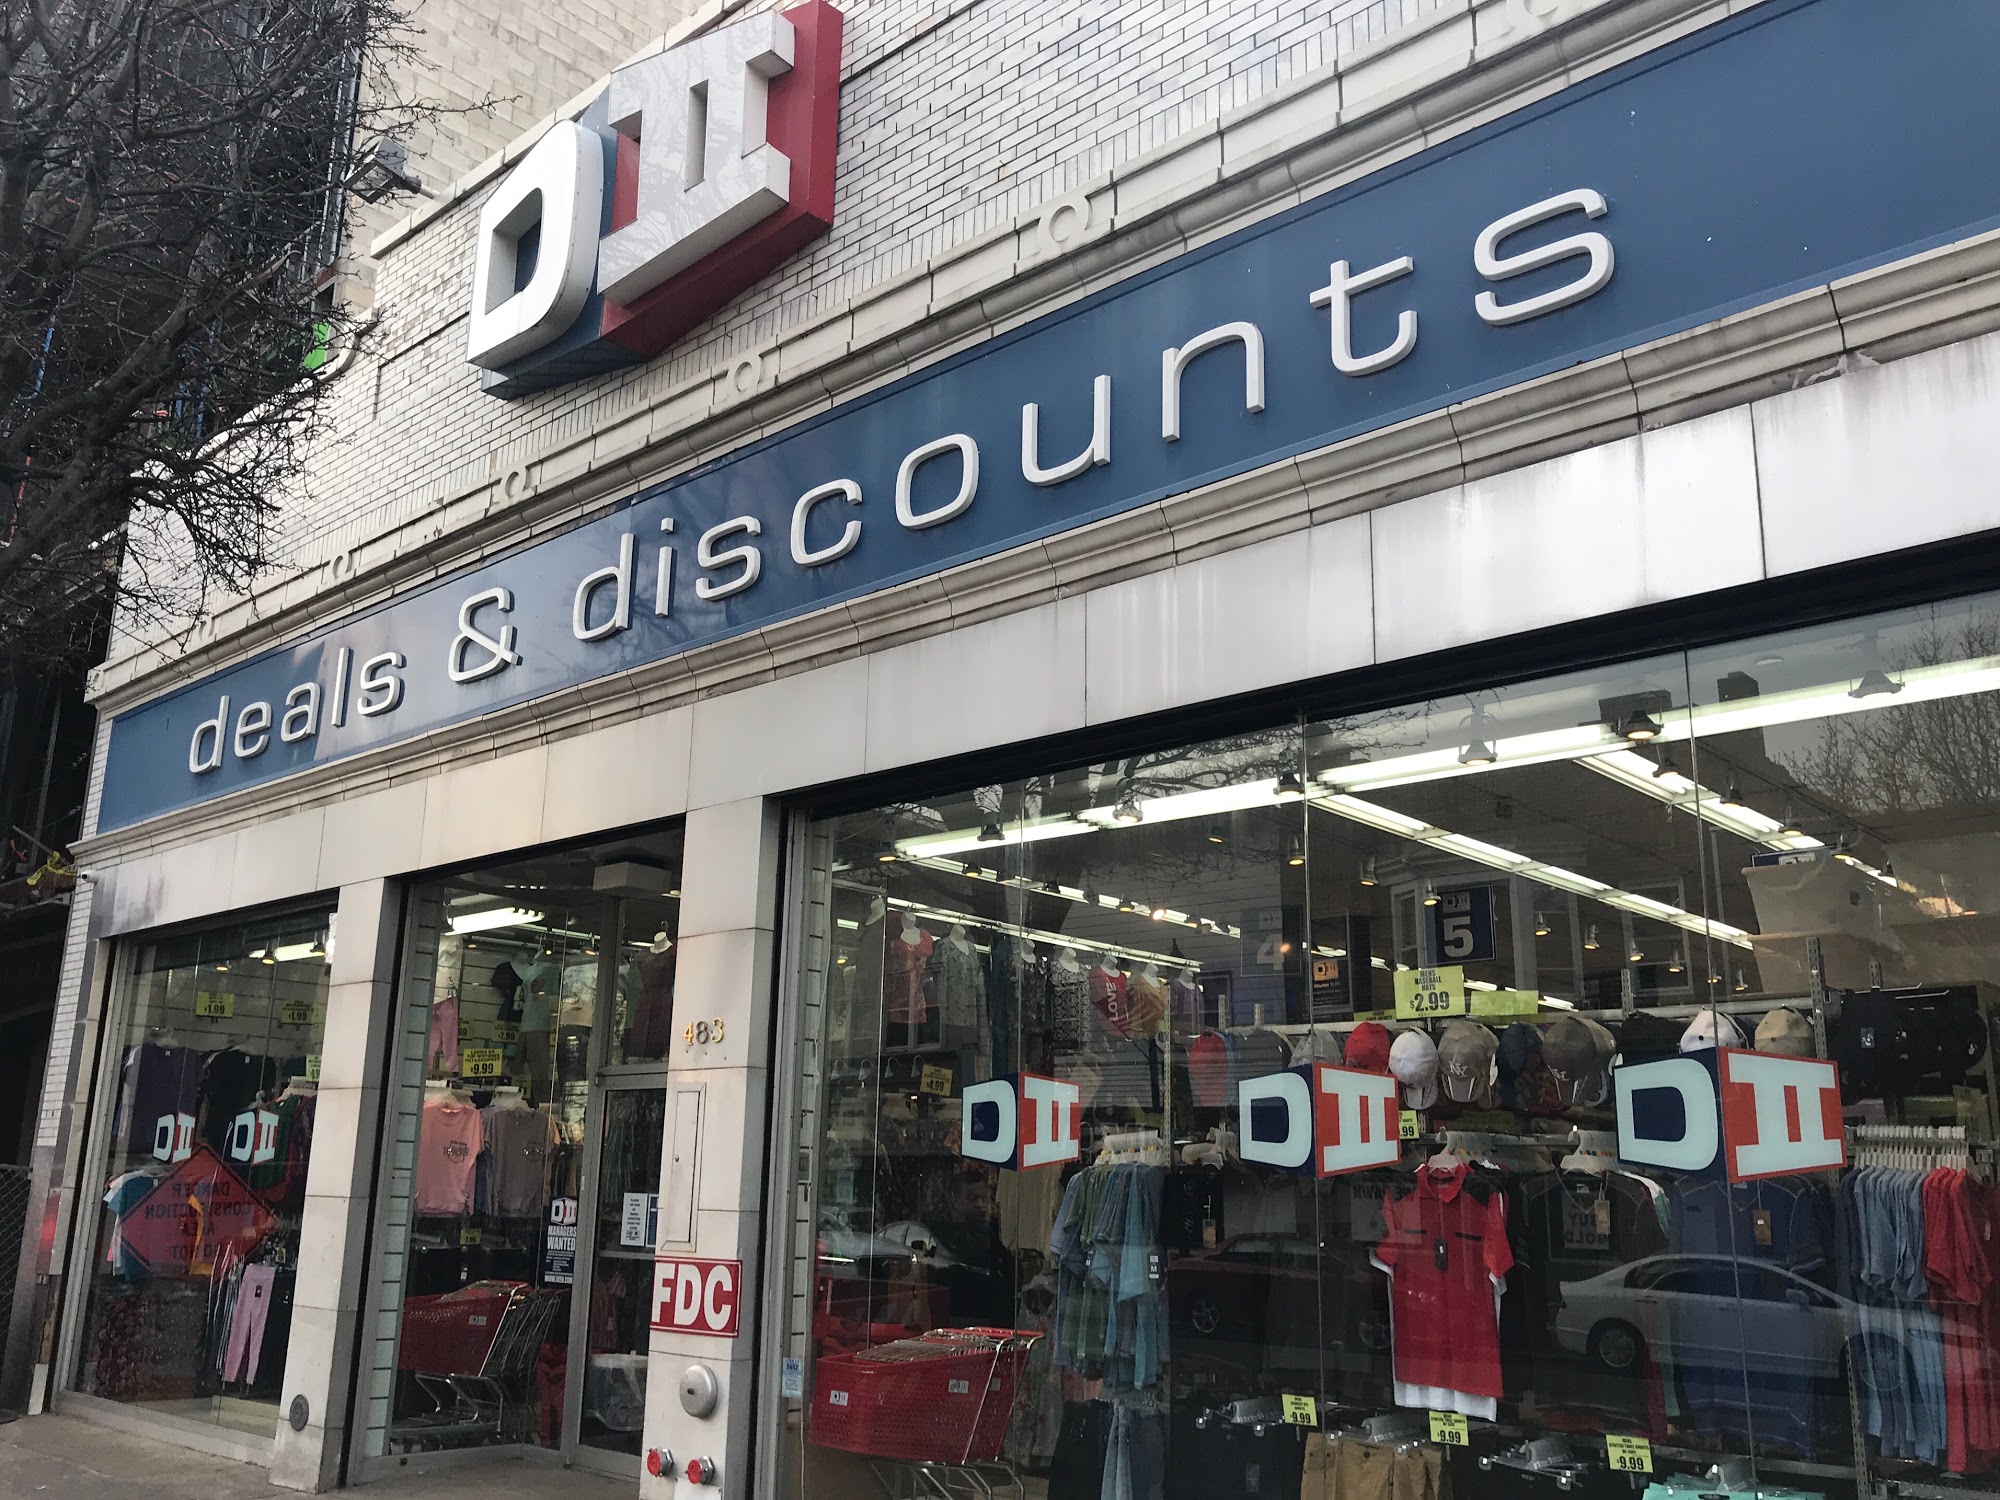 DII Deals & Discounts